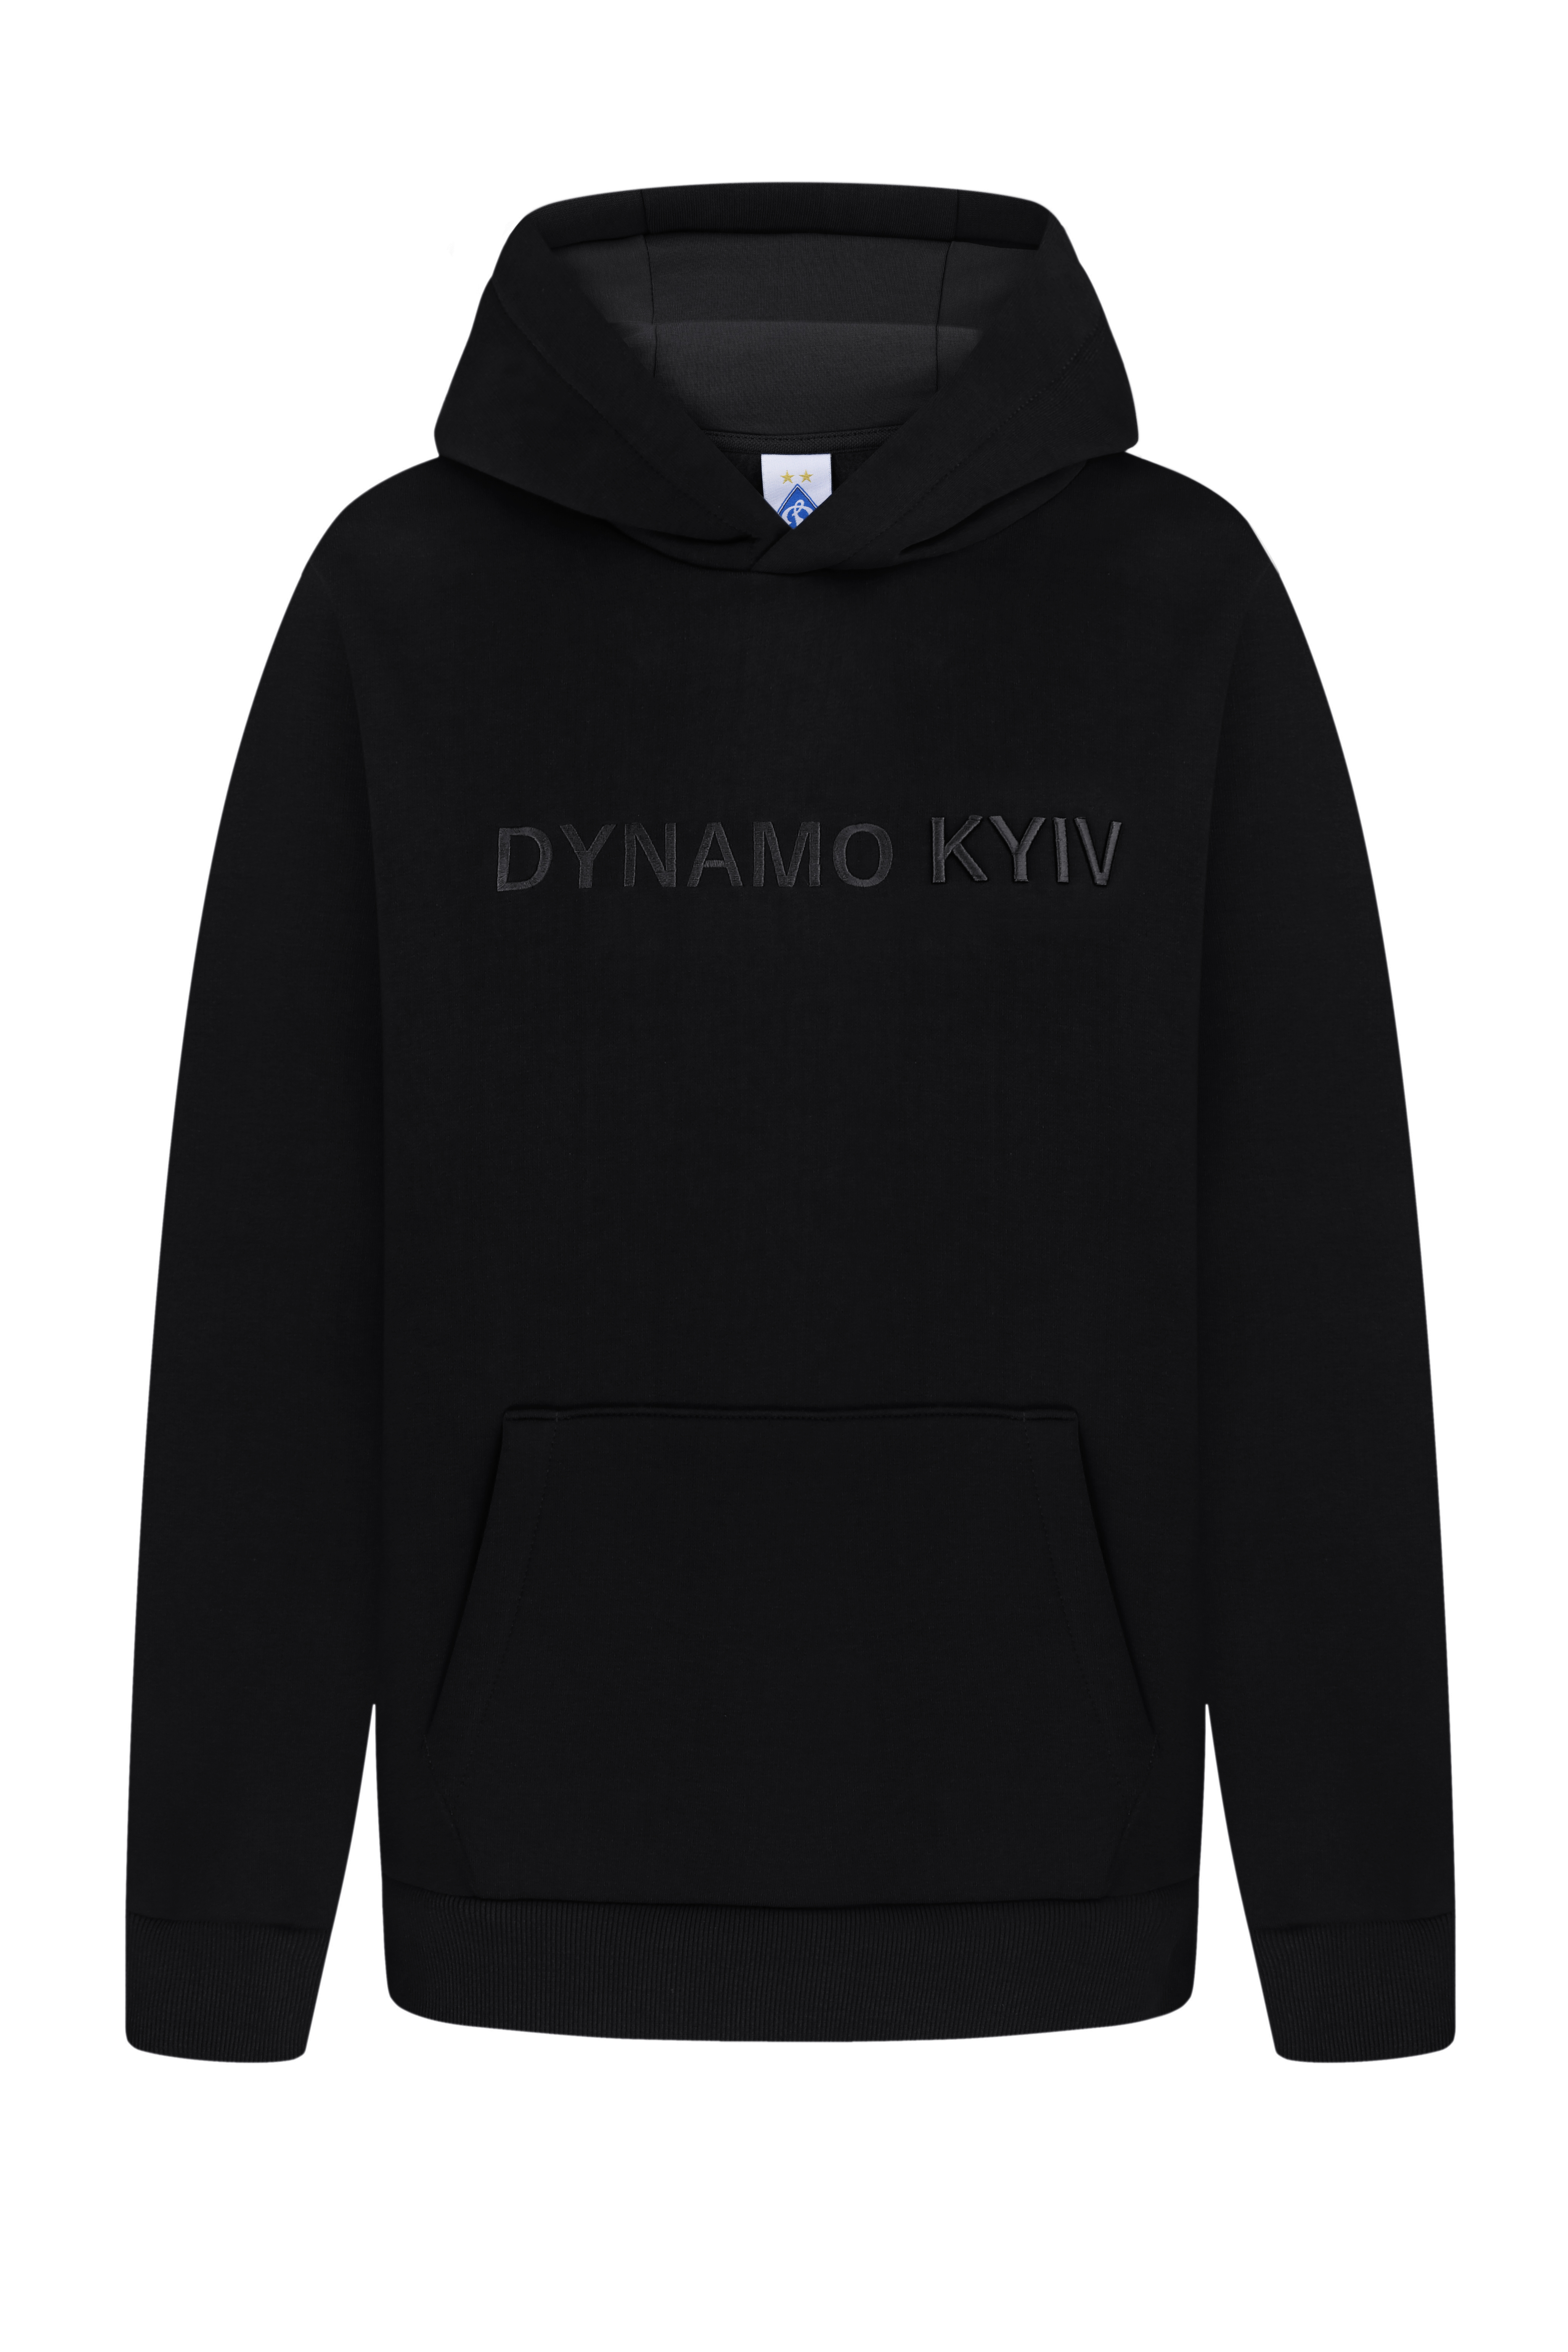 Теплий худі "Dynamo Kyiv", чорний